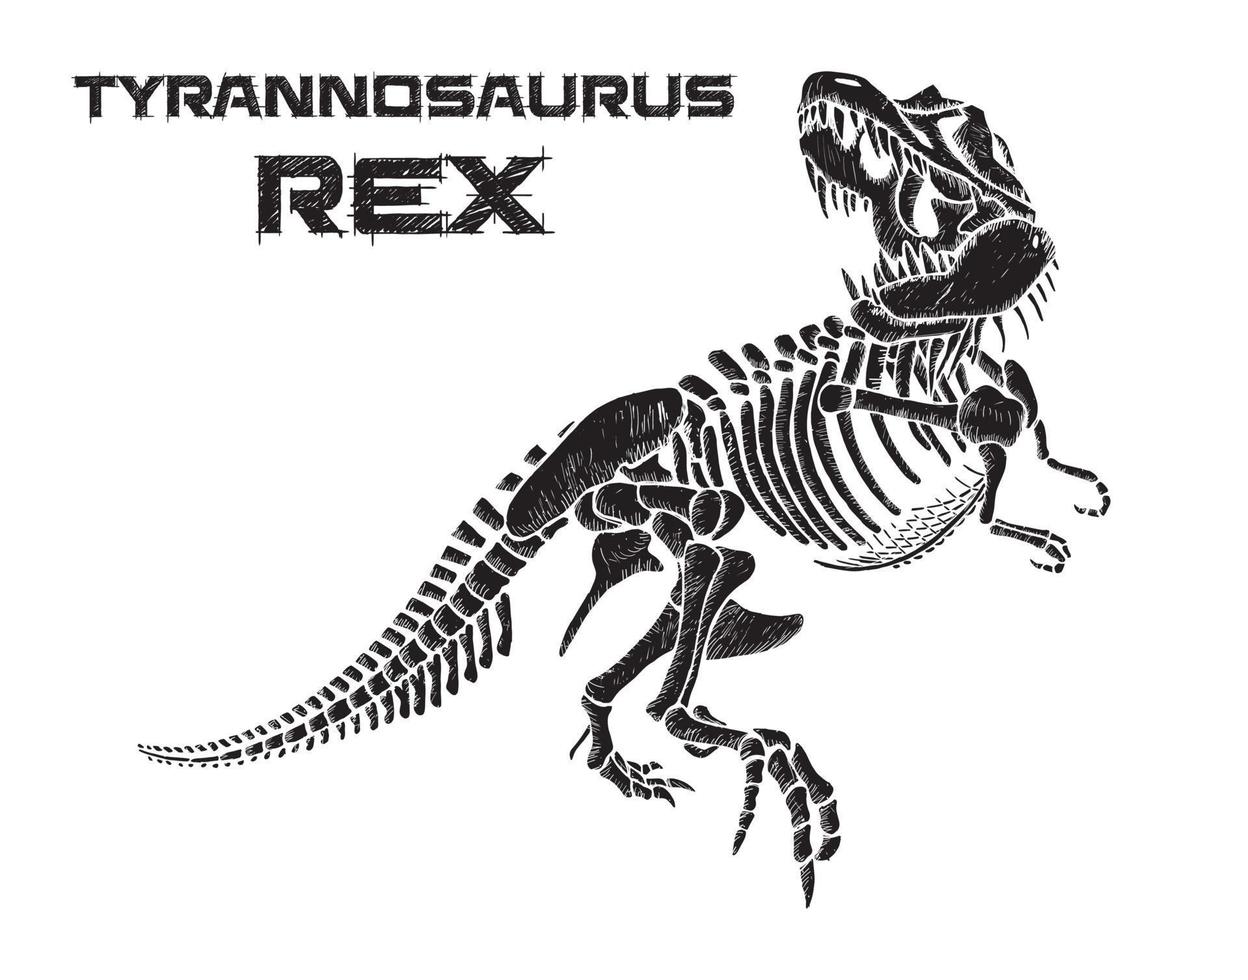 Tiranossauro rex esqueleto mão desenhada ilustração vetorial no fundo branco vetor